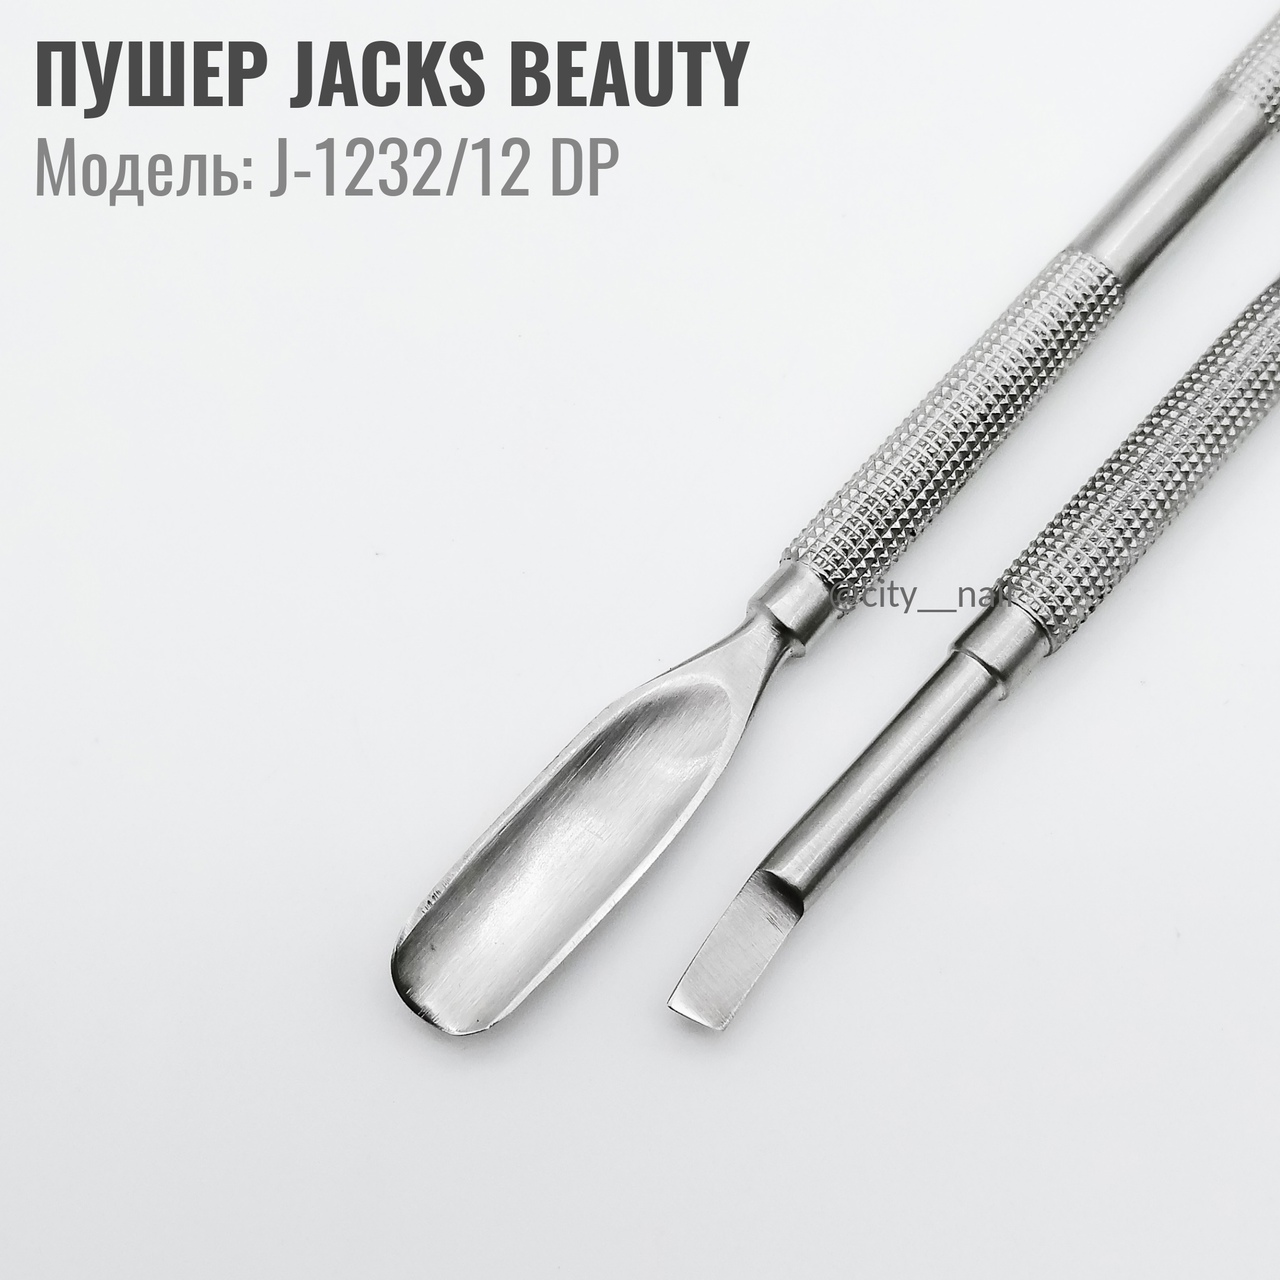 картинка Пушер JACKS BEAUTY J-1232/12 DP от магазина профессиональной косметики City-Nail